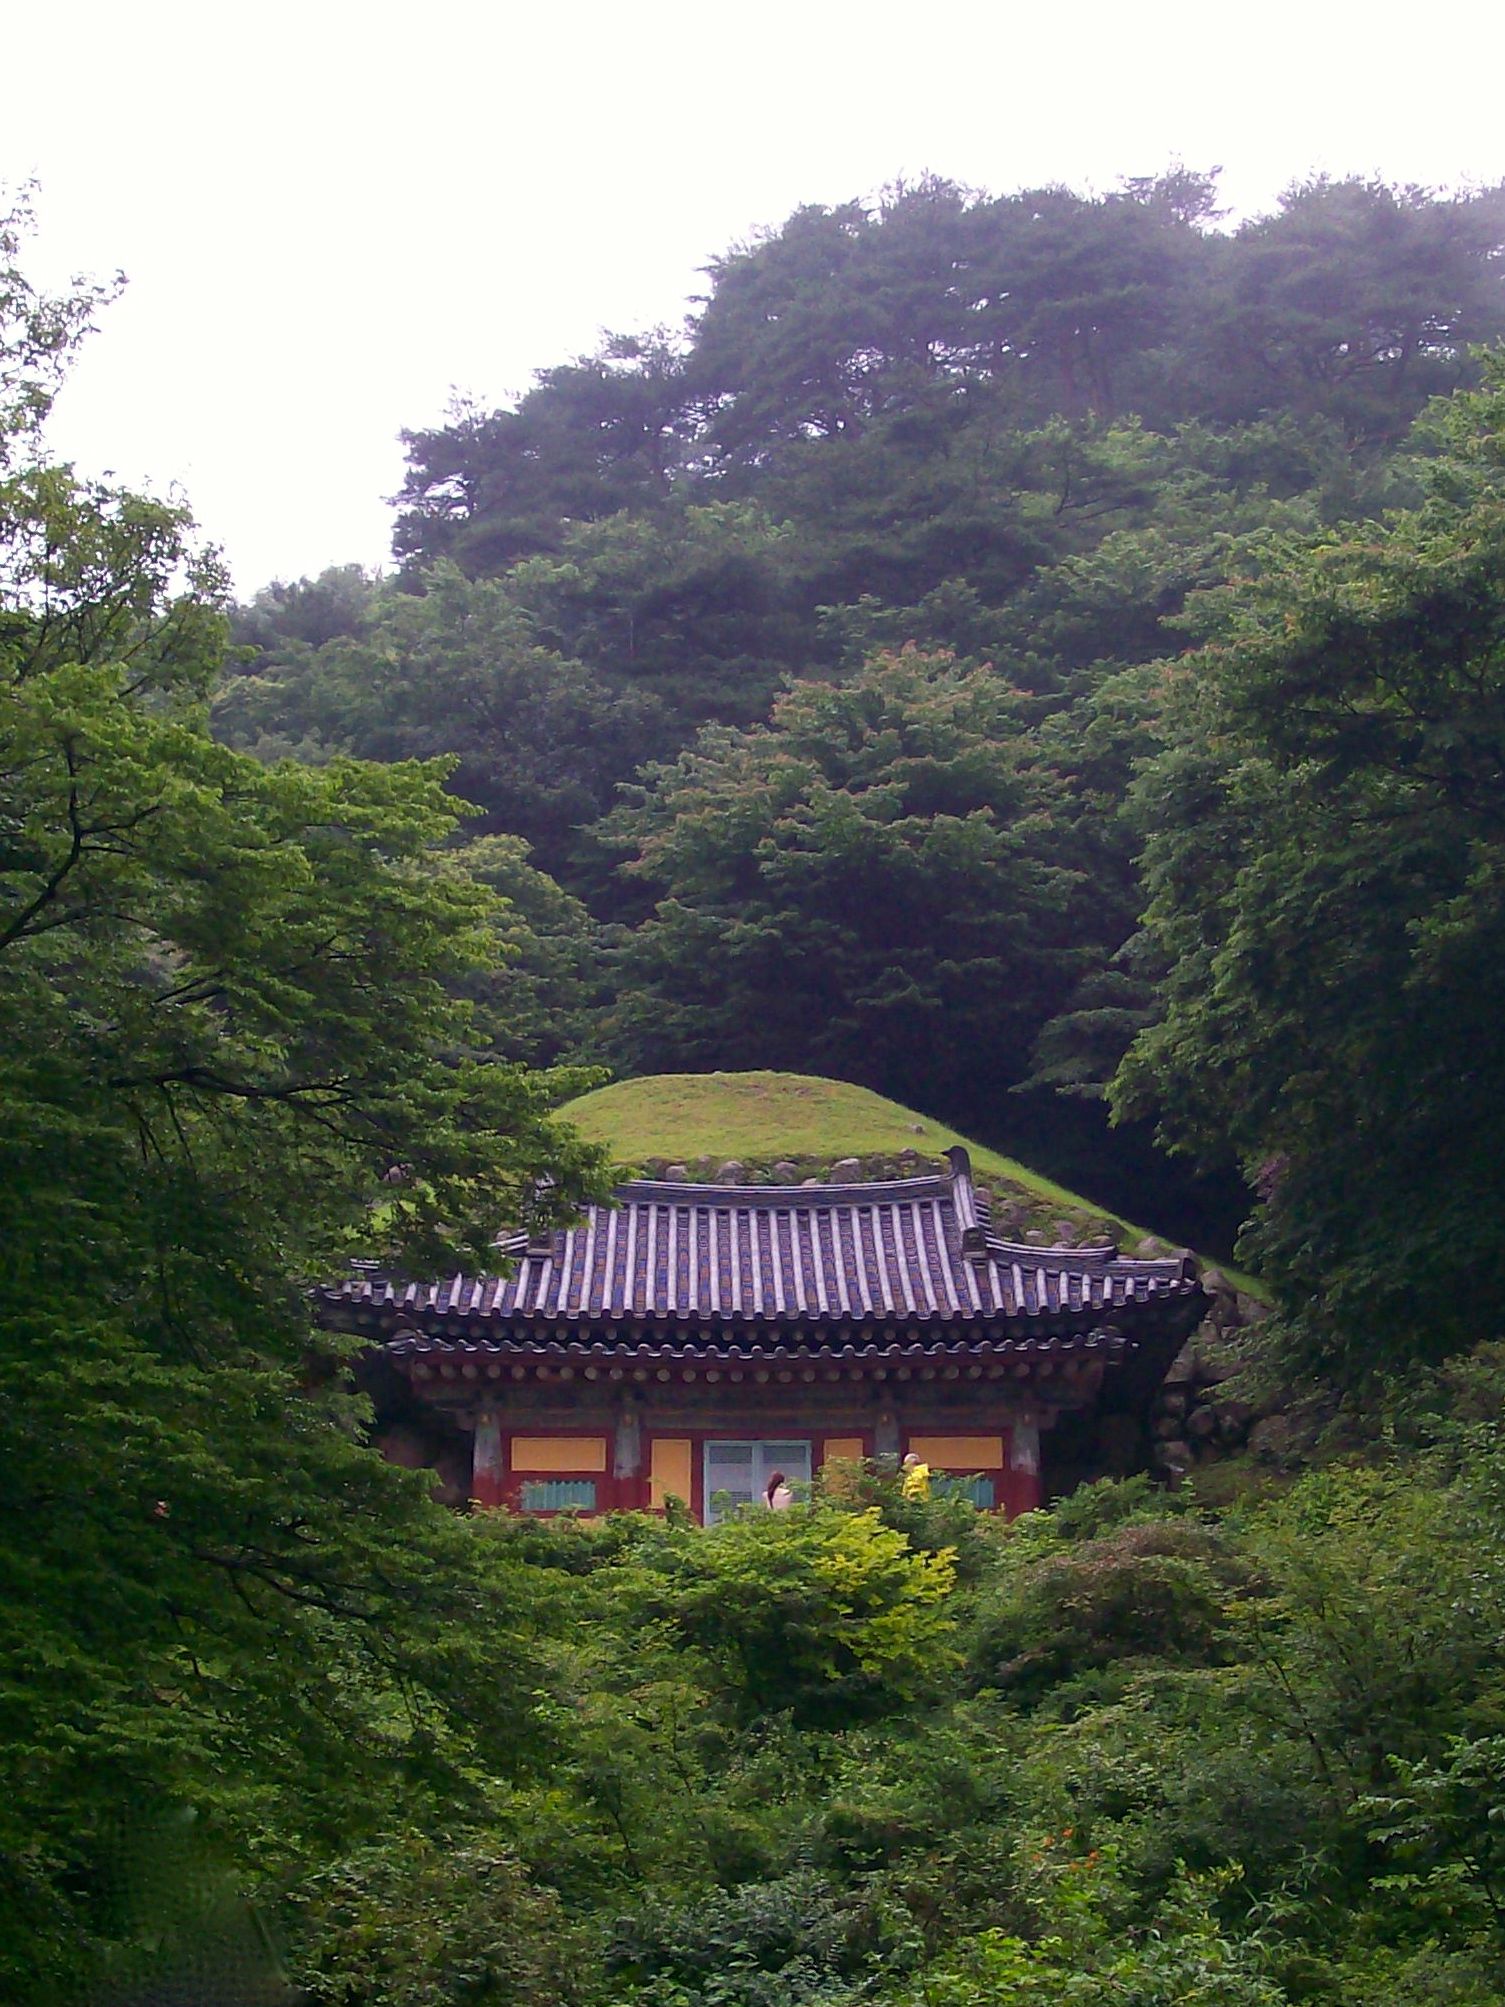 Exterior of Seokguram Grotto